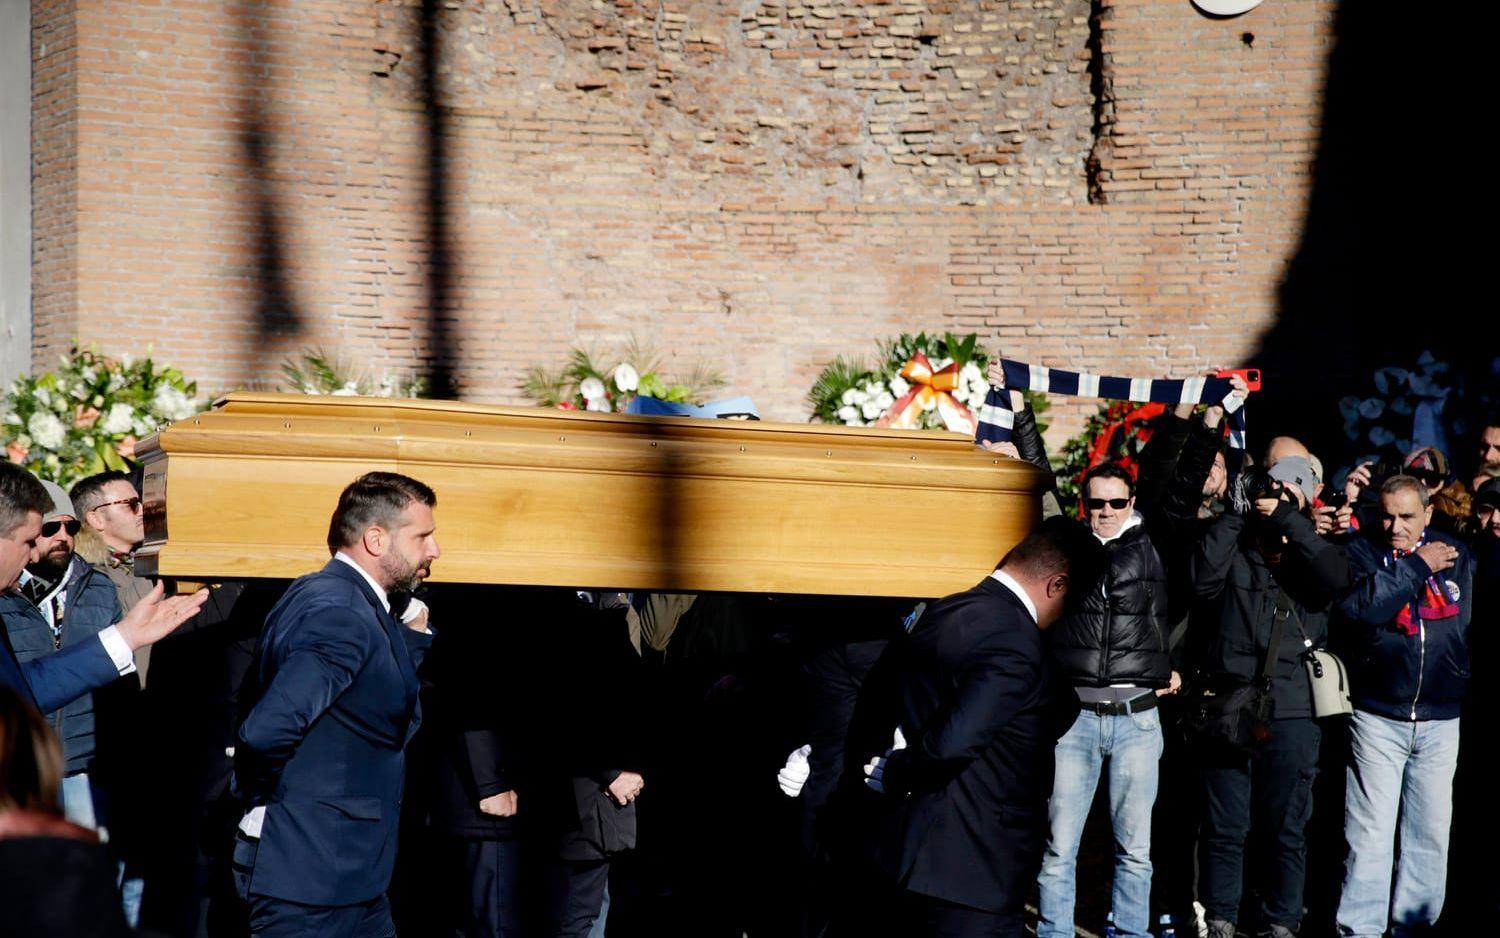 Sinisa Mihajlovic begravdes i Rom under måndagen. Roberto Mancini, Attilio Lombardo och Dejan Stankovic, tidigare lagkamrater till Mihajlovic, var några av de personer som bar ut kistan efter ceremonin